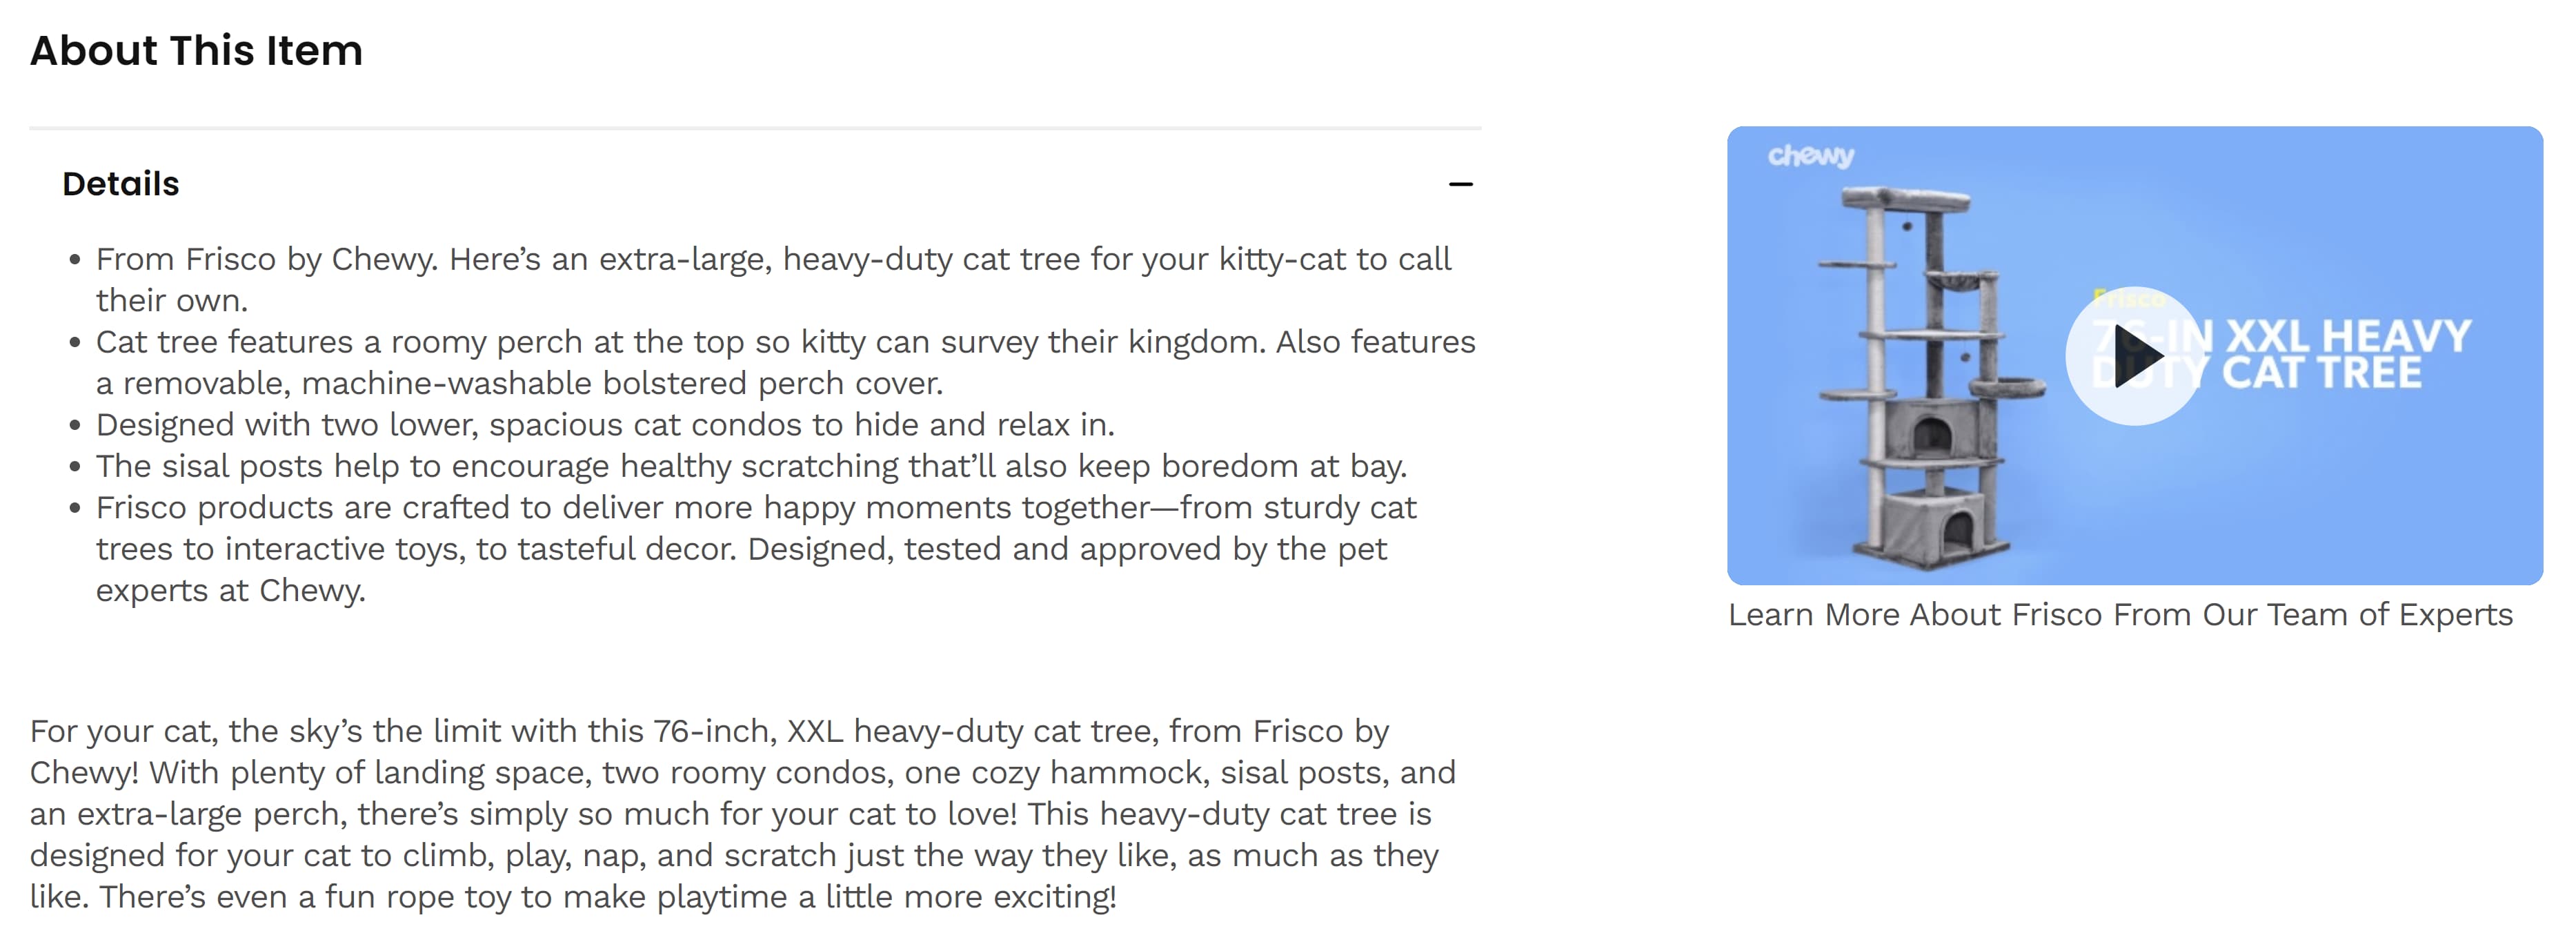 تصویری از ویژگی های محصول درخت گربه.